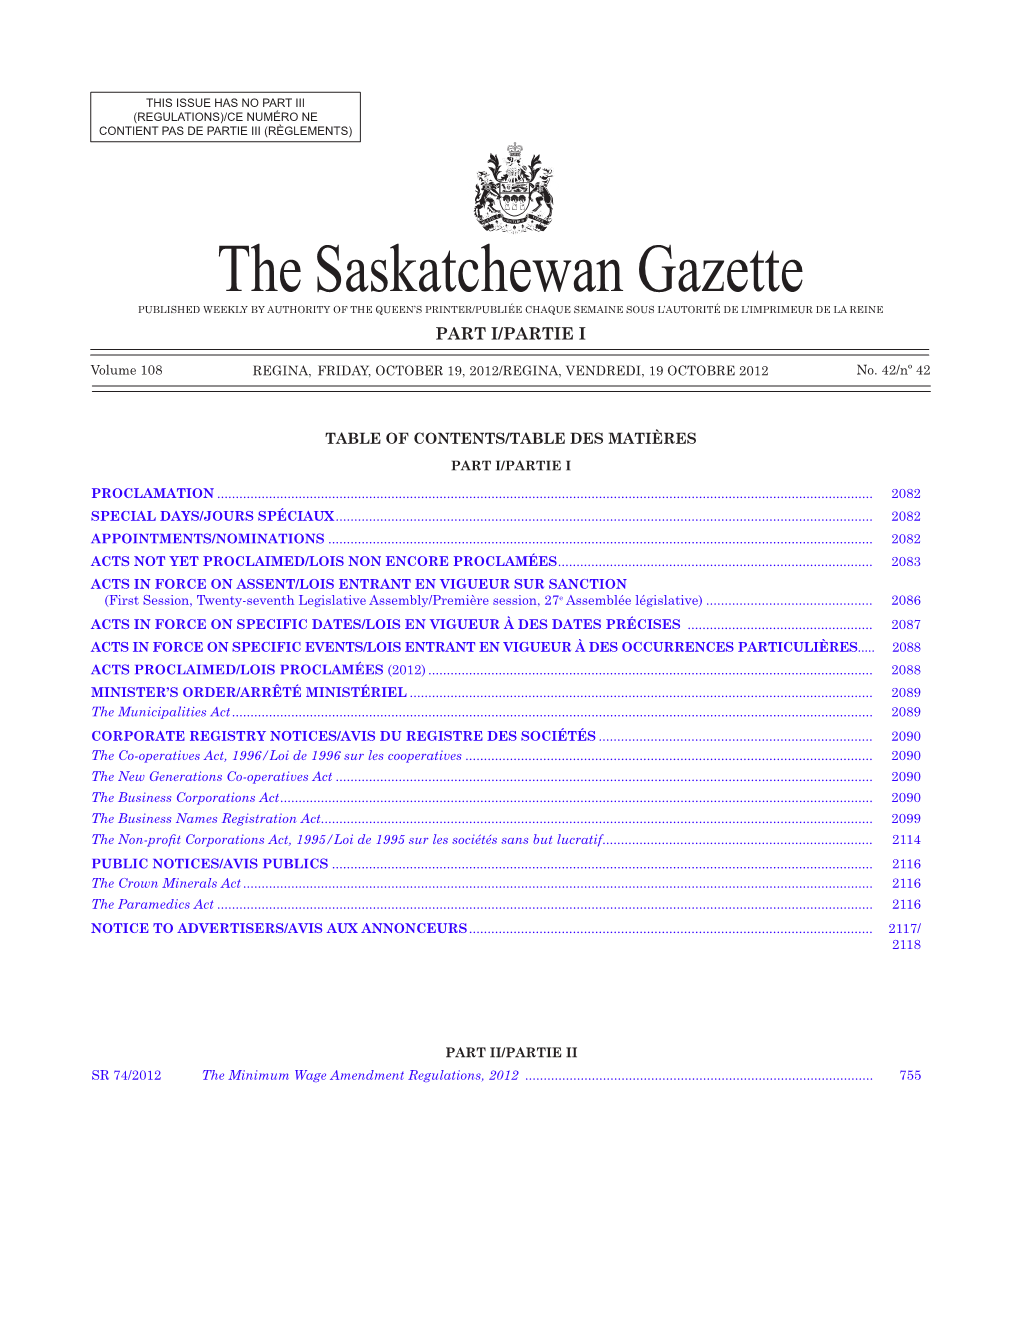 THE SASKATCHEWAN GAZETTE, October 19, 2012 2081 (REGULATIONS)/CE NUMÉRO NE CONTIENT PAS DE PARTIE III (RÈGLEMENTS)